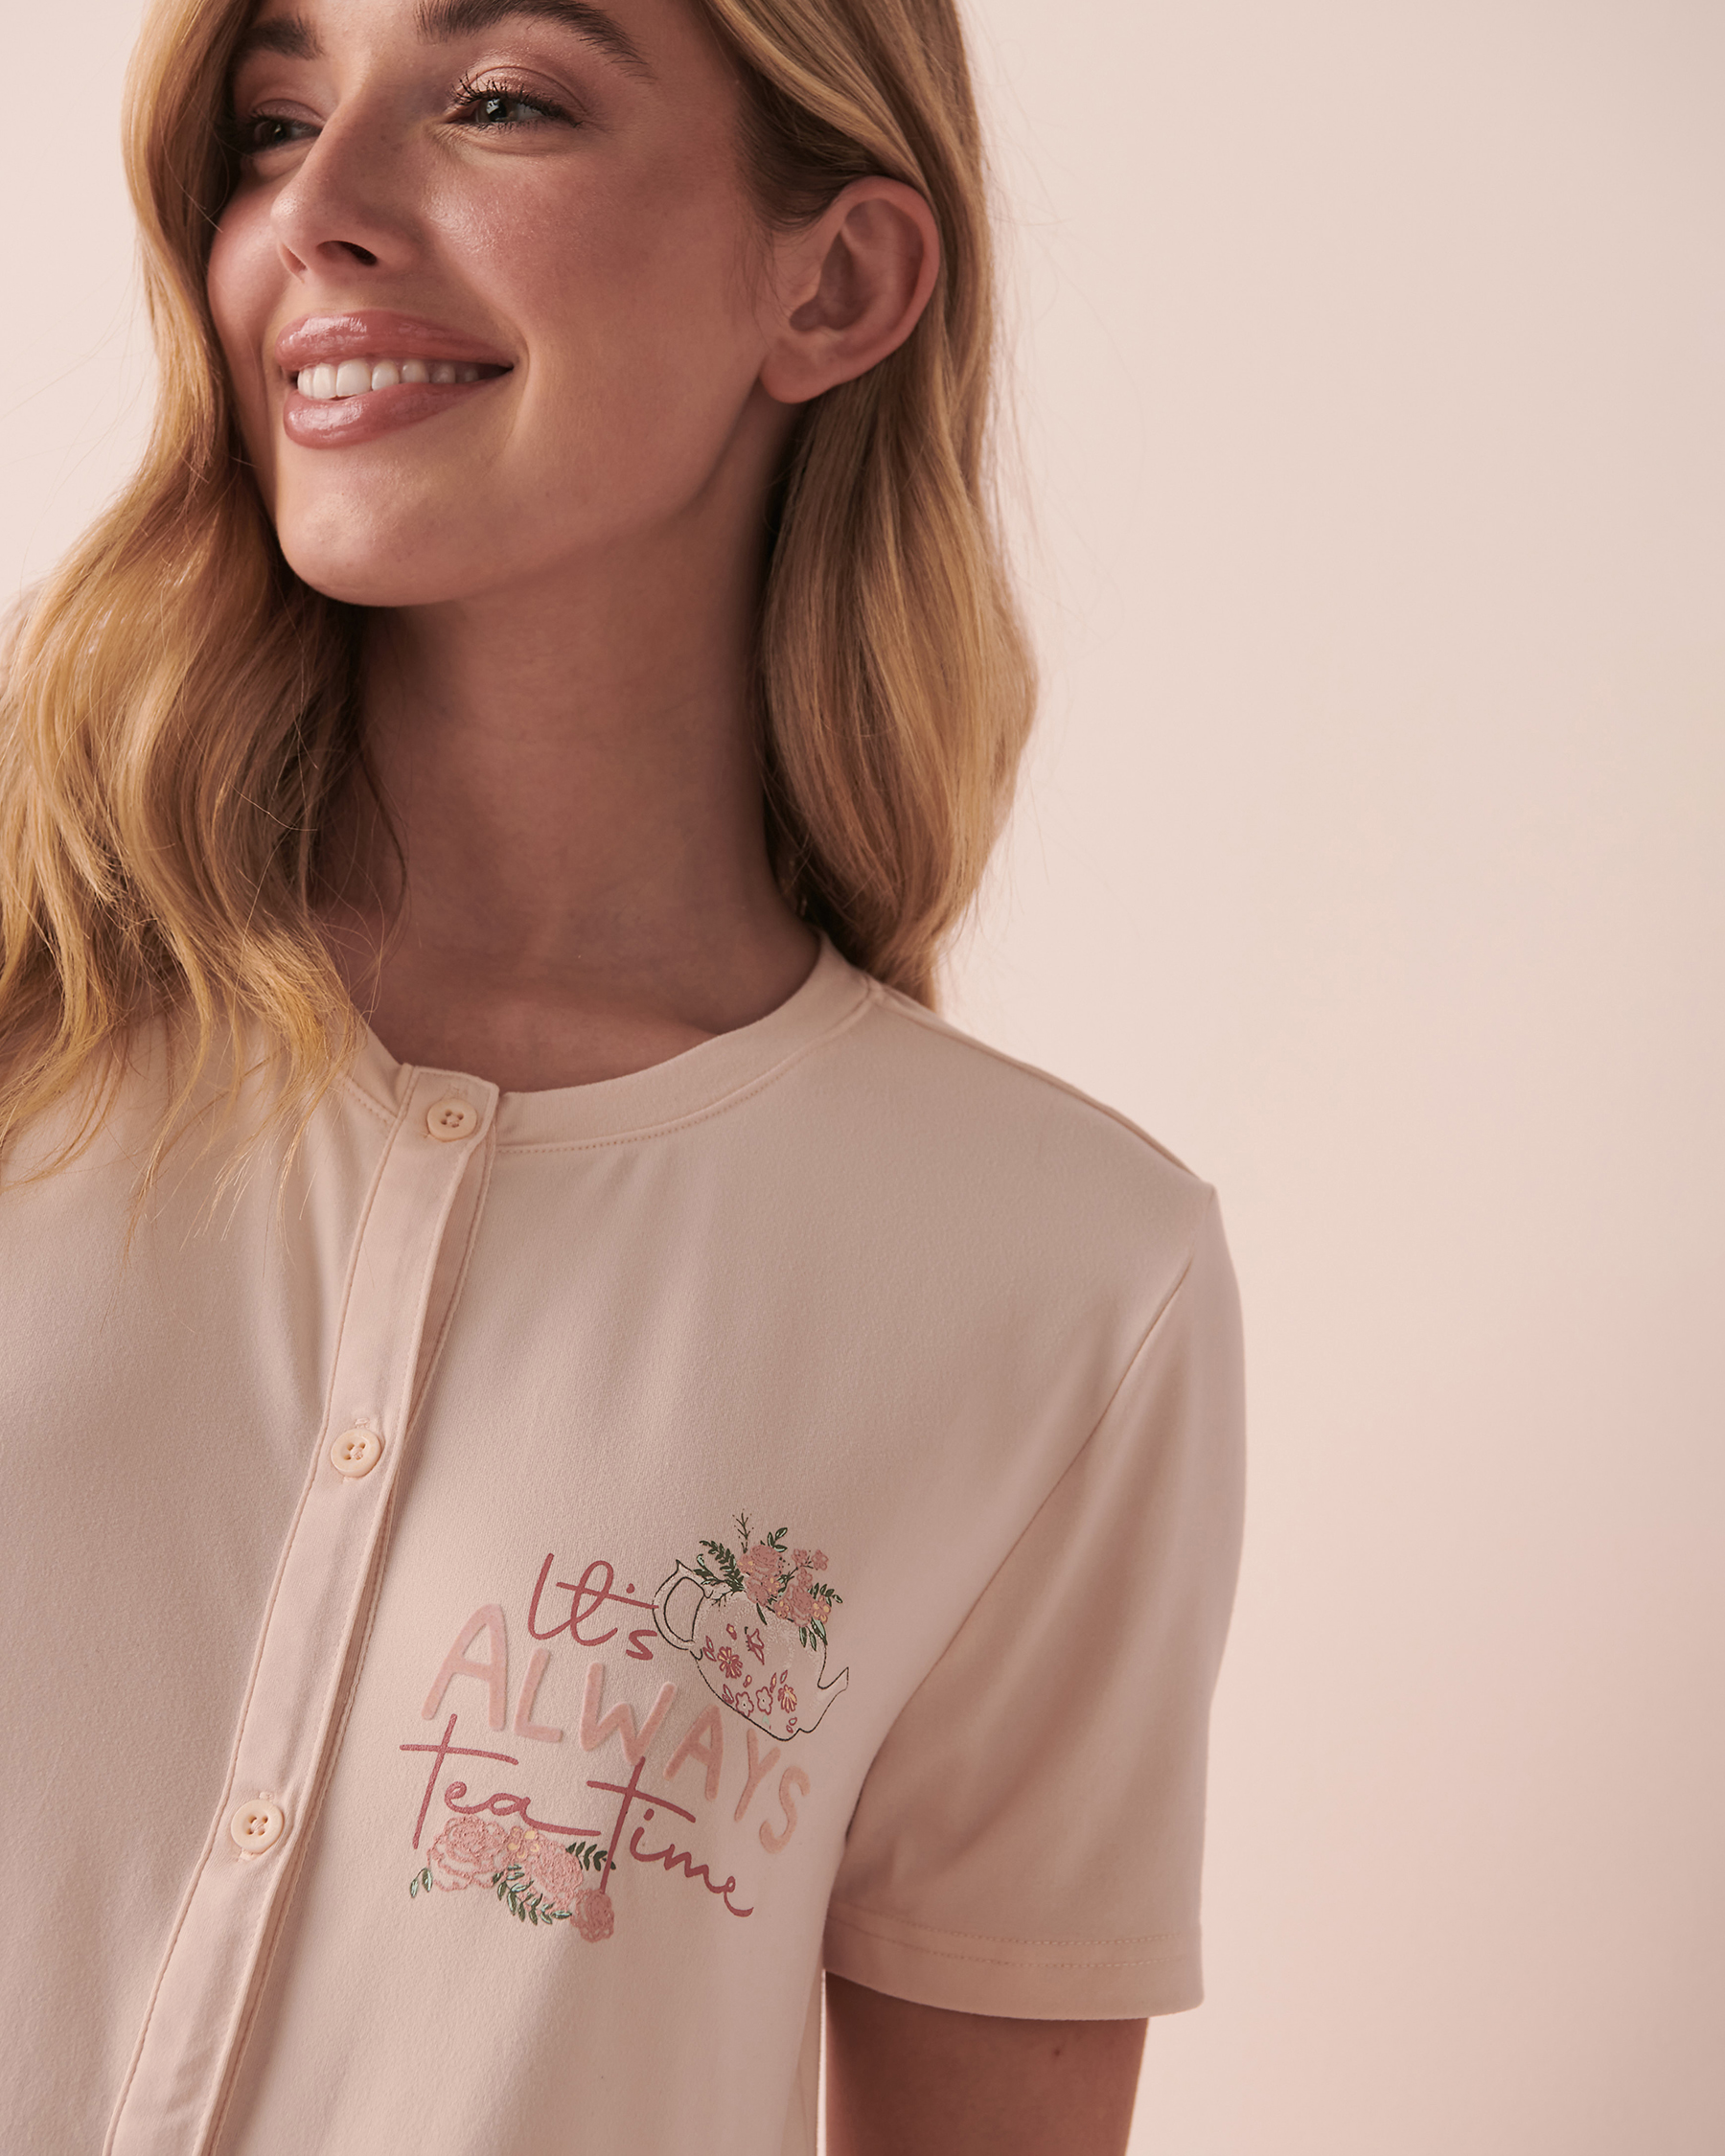 La Vie en Rose Super Soft T-shirt with Buttons. 5